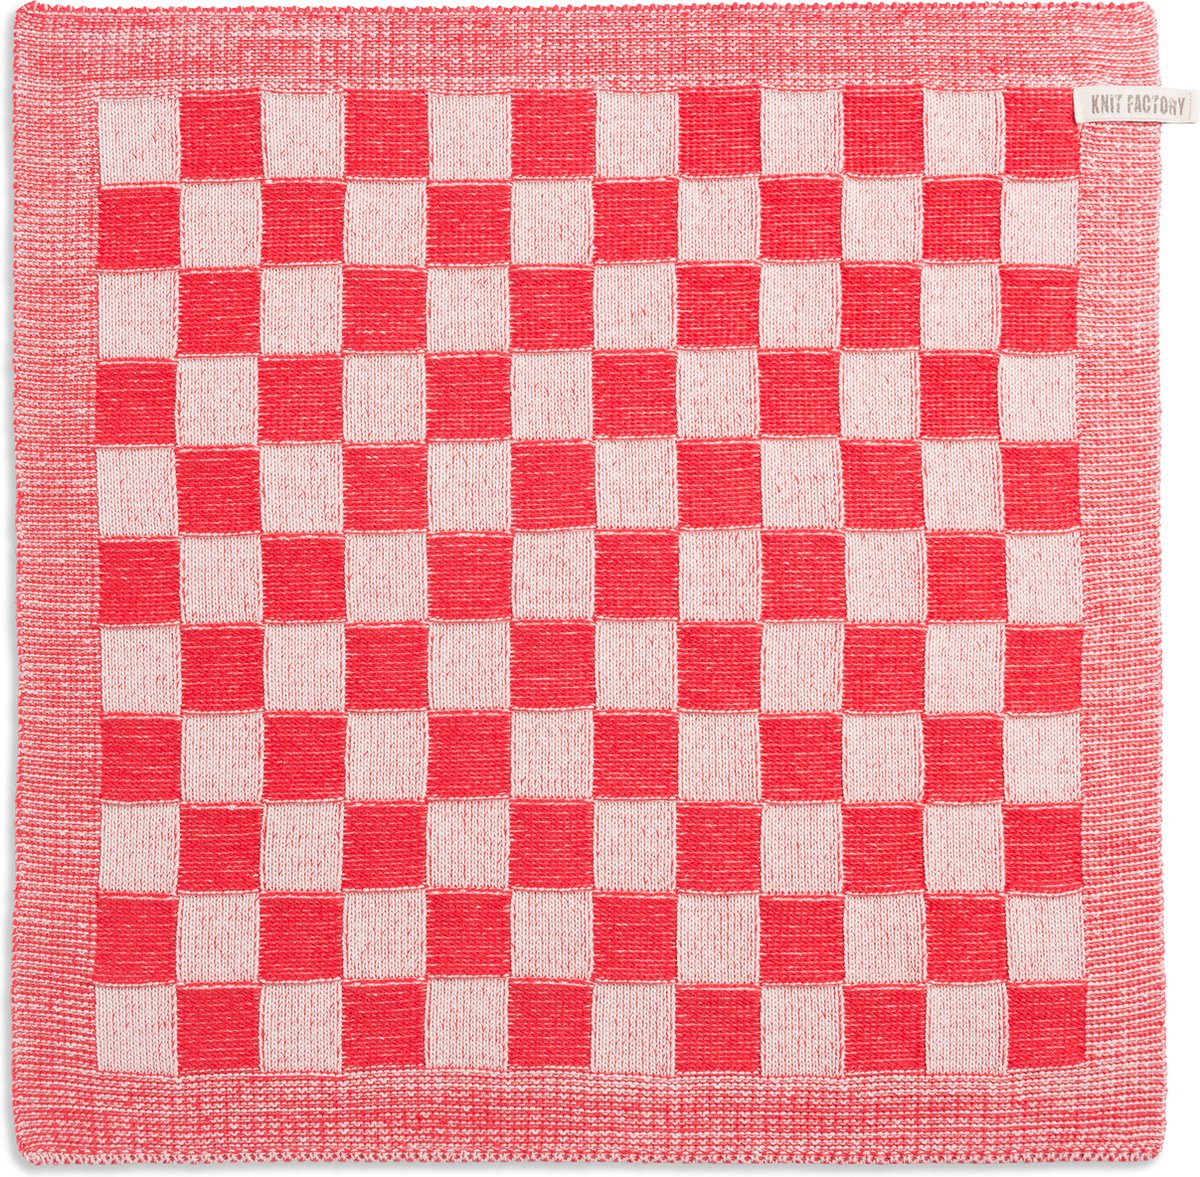 Knit Factory Gebreide Keukendoek - Keukenhanddoek Block - Geblokt motief - Handdoek - Vaatdoek - Keuken doek - Ecru/Rood - Traditionele look - 50x50 cm